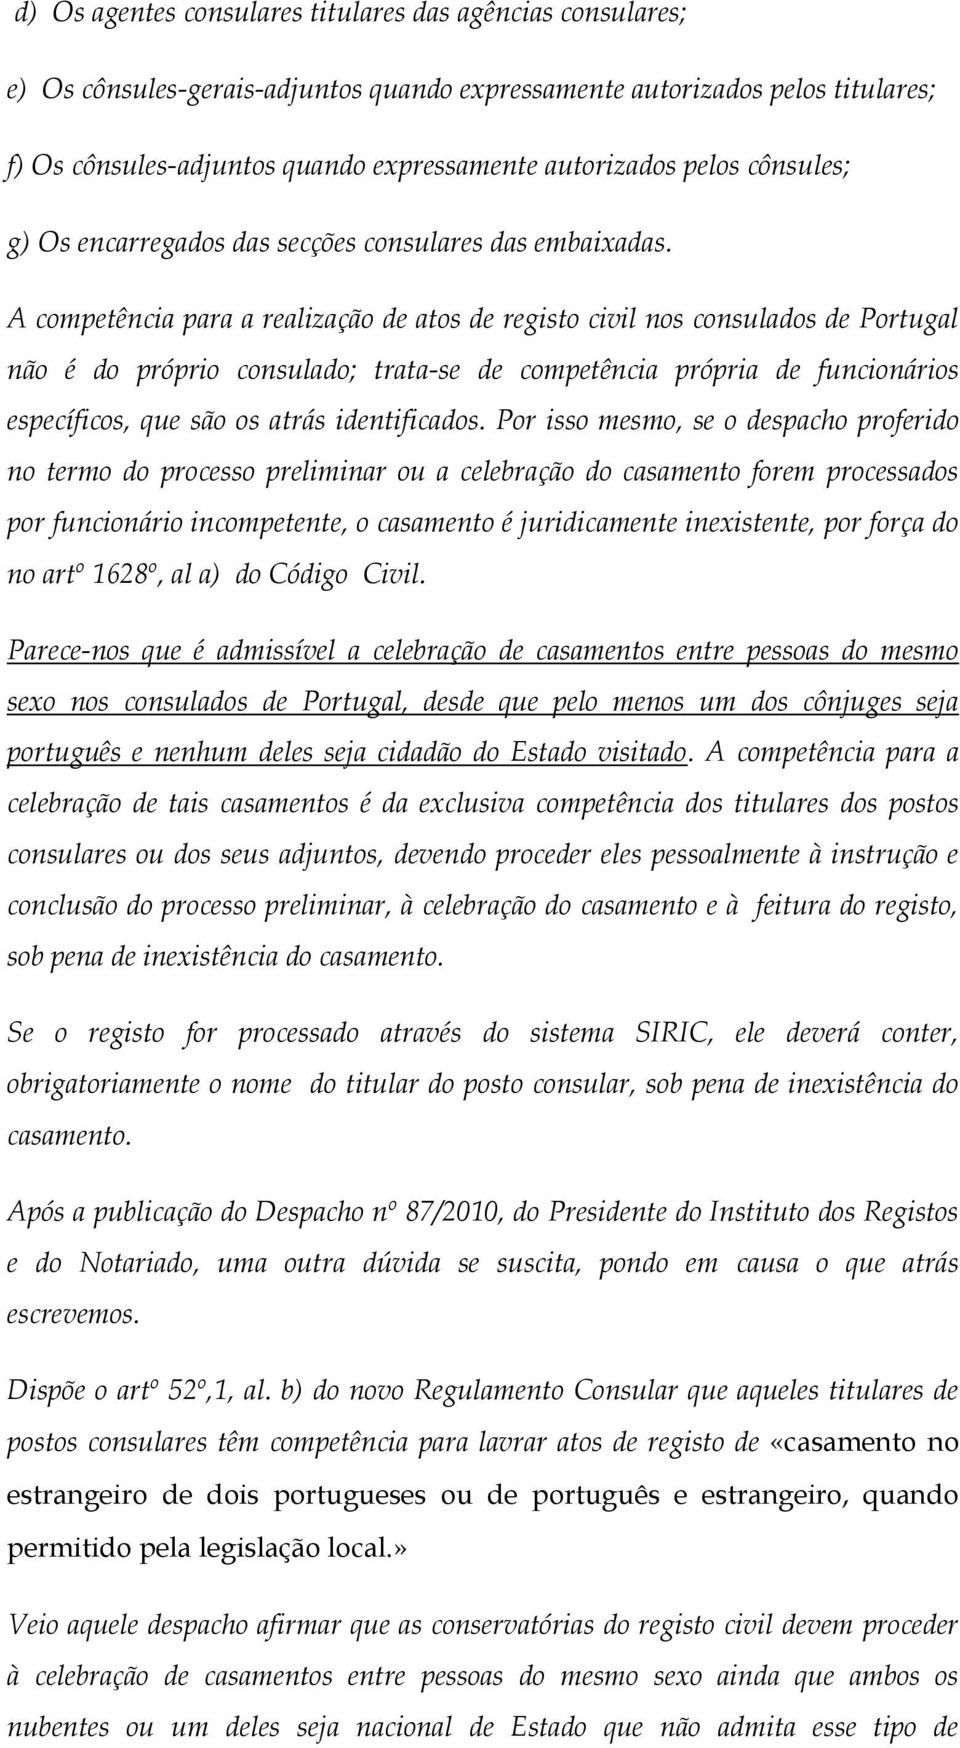 A competência para a realização de atos de registo civil nos consulados de Portugal não é do próprio consulado; trata-se de competência própria de funcionários específicos, que são os atrás